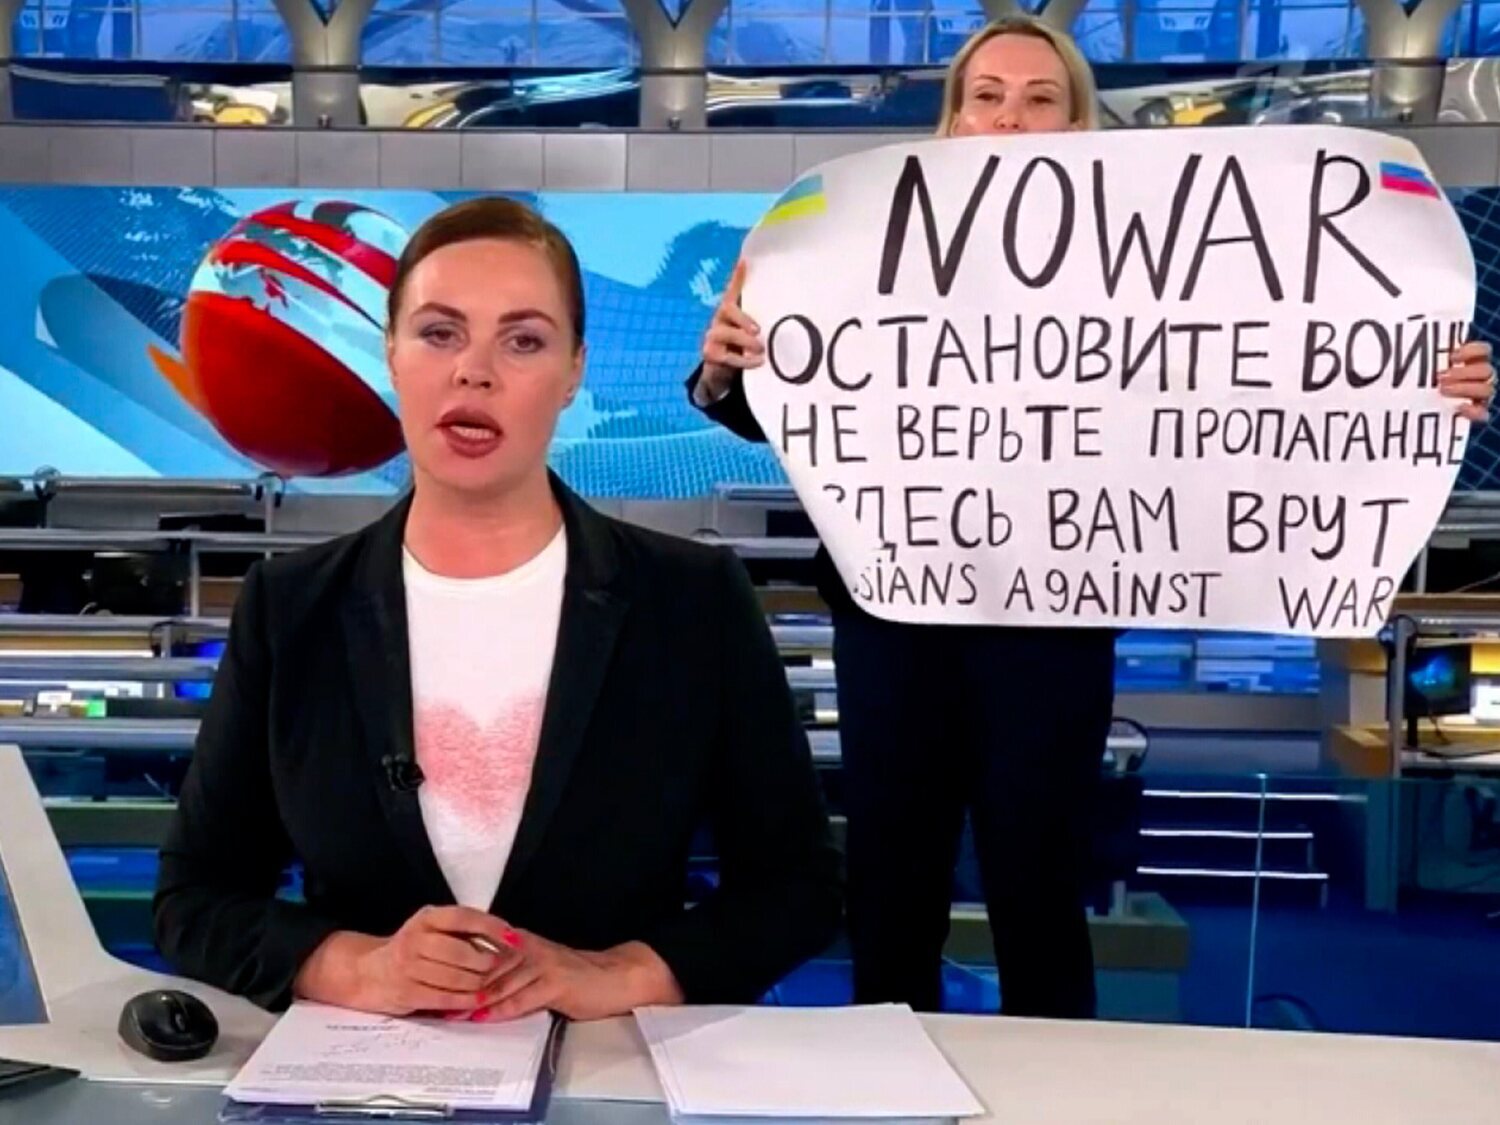 Una periodista de la televisión rusa irrumpe en directo contra la guerra: "Os están mintiendo"